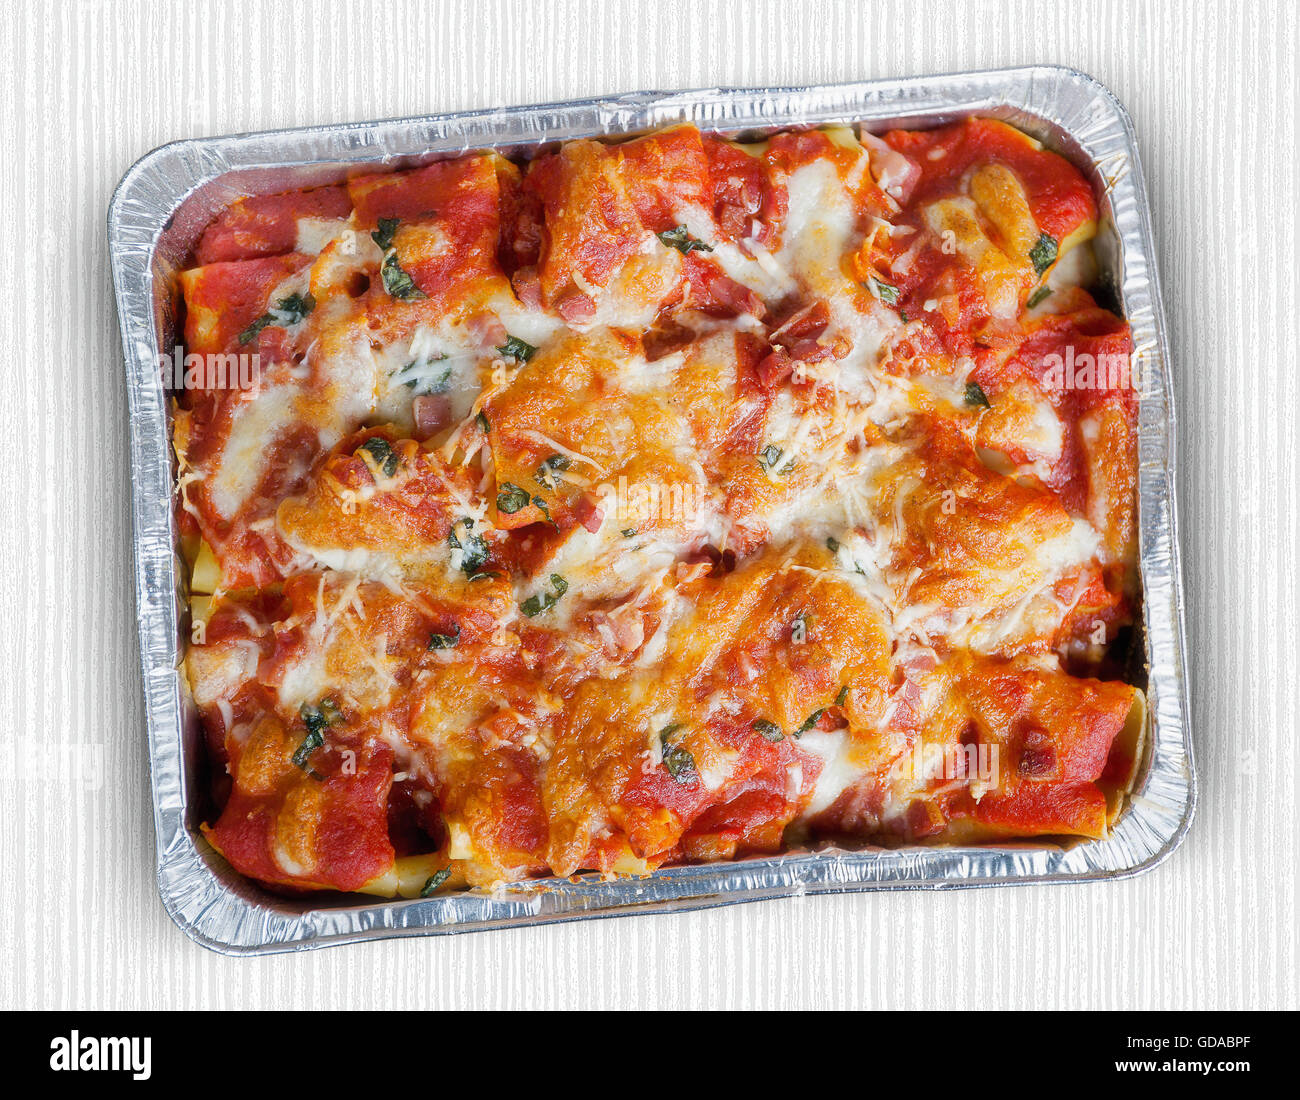 Paccheri al forno con salsa di pomodoro, mozzarella, pancetta e basilico. Italiano specialità culinarie. Vista da sopra. Foto Stock